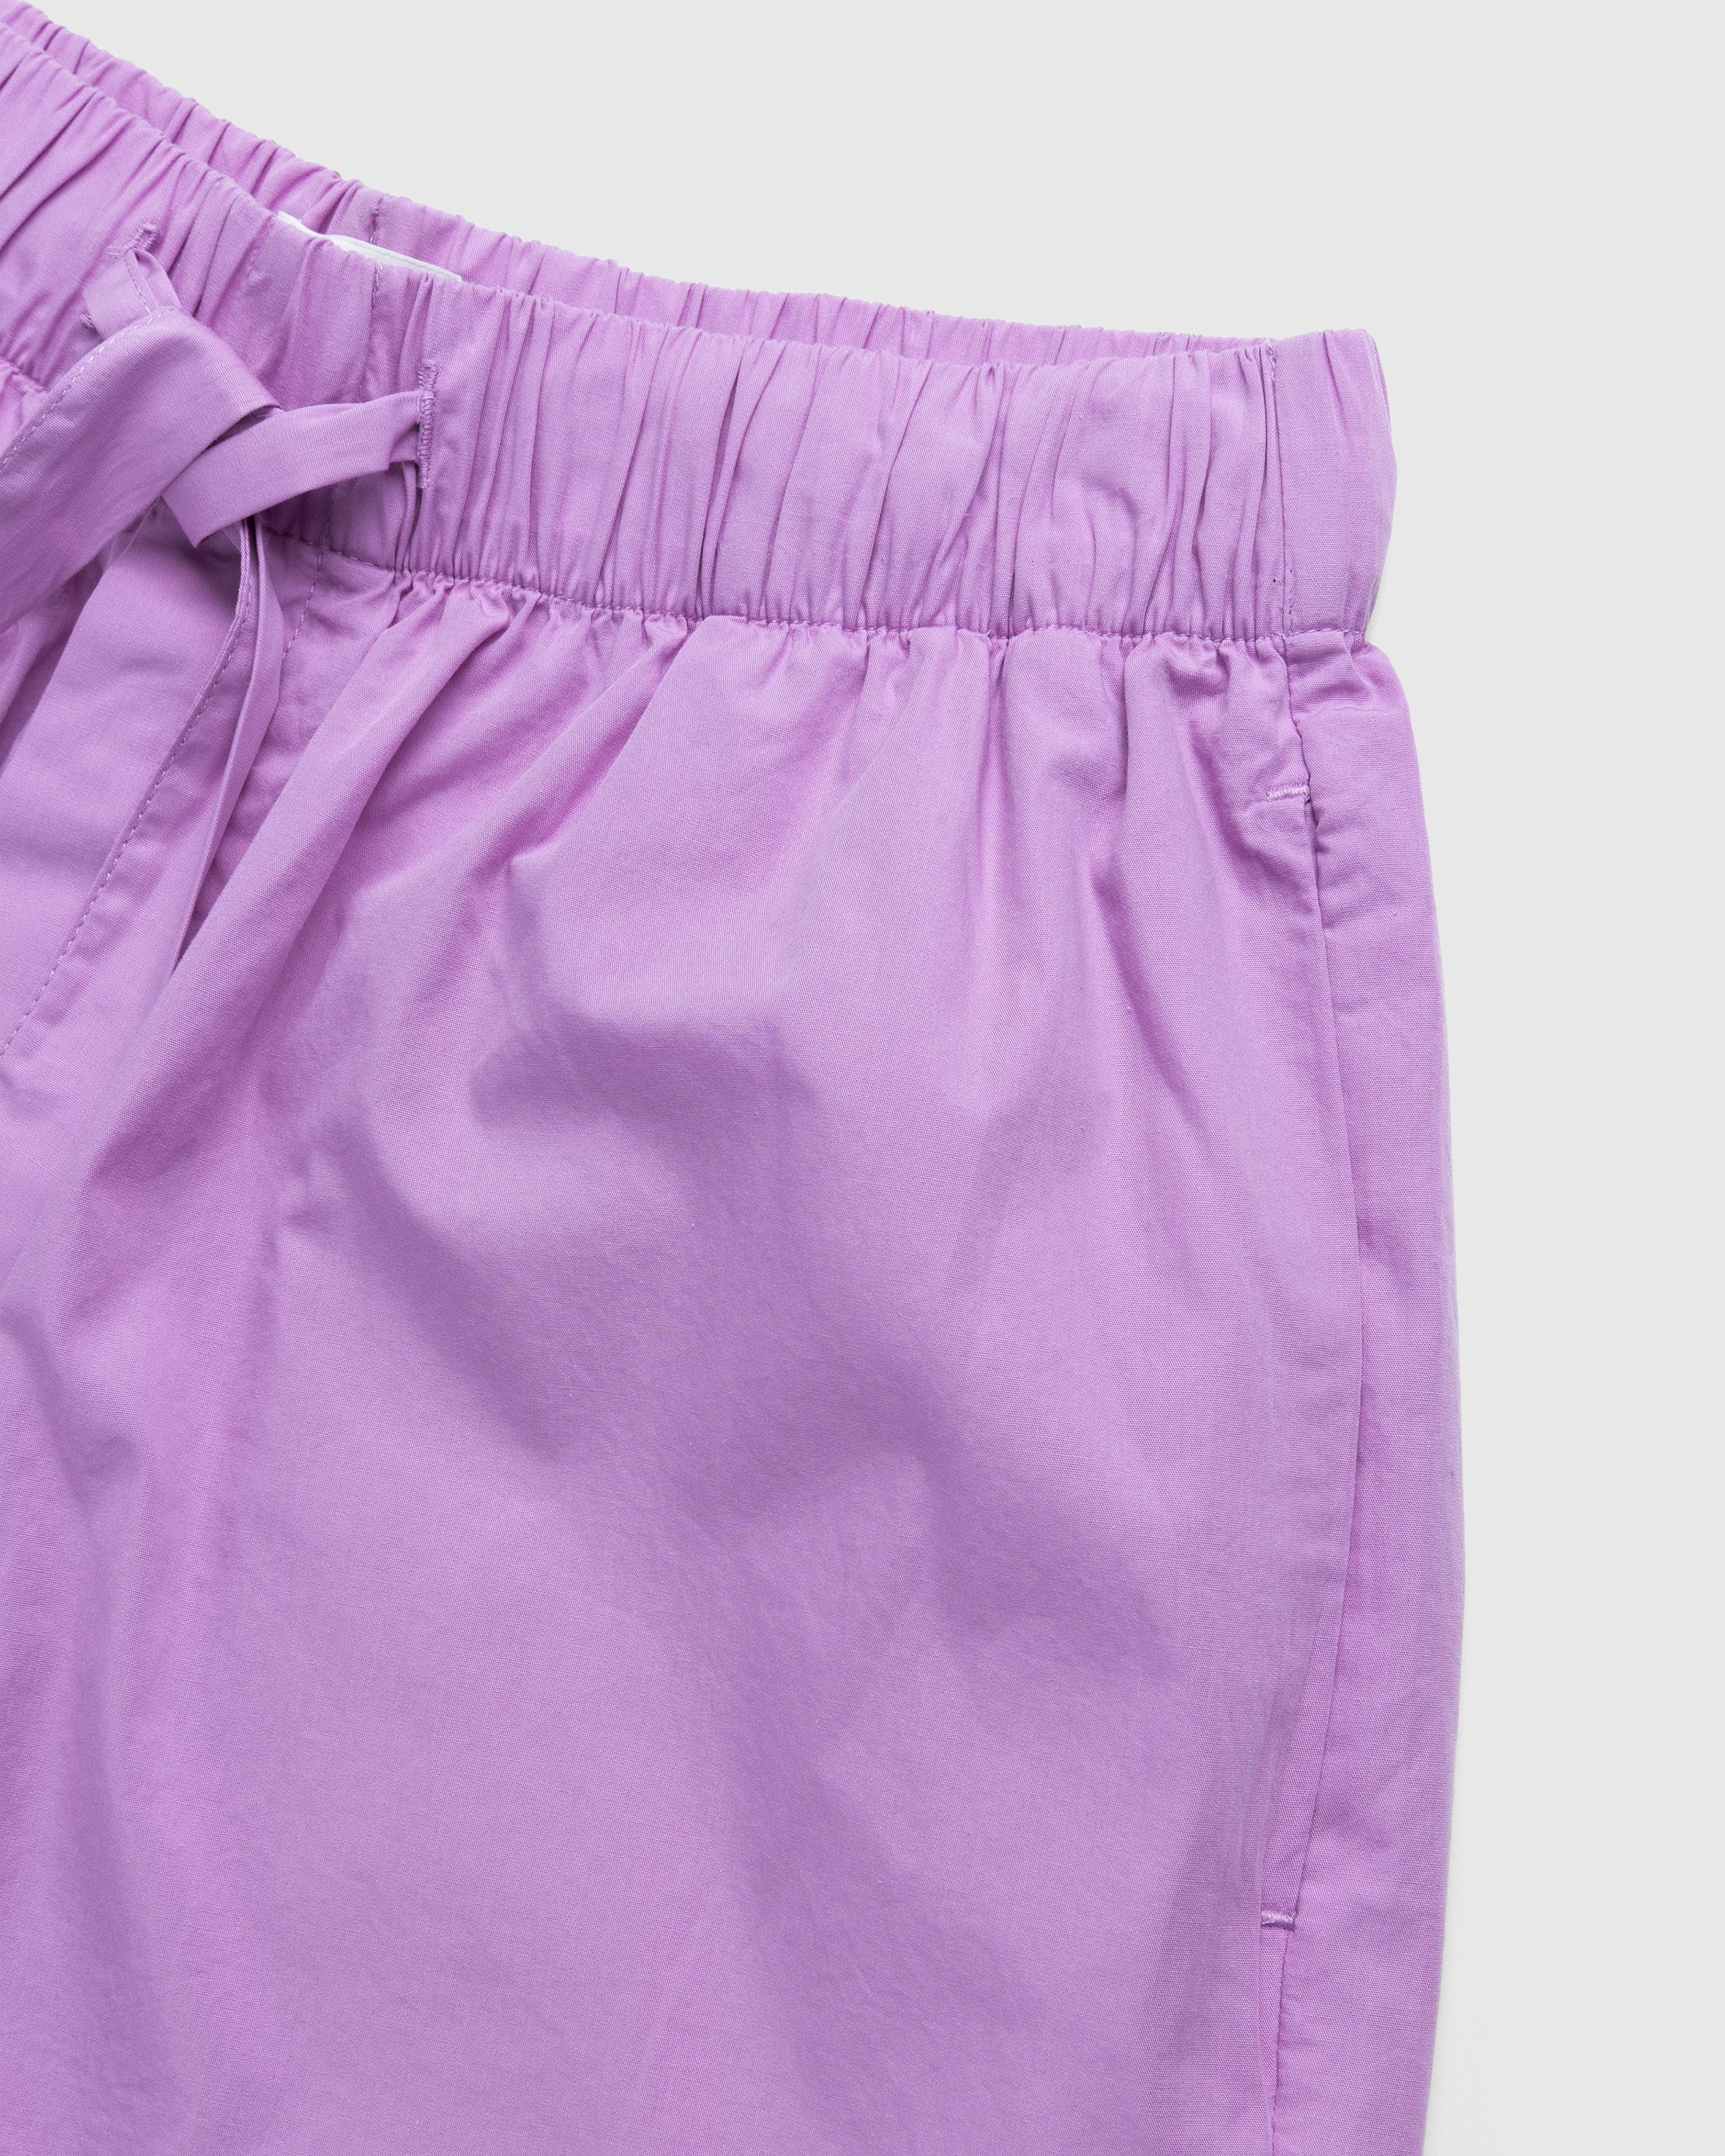 Tekla – Cotton Poplin Pyjamas Shorts Purple Pink - Pyjamas - Pink - Image 3